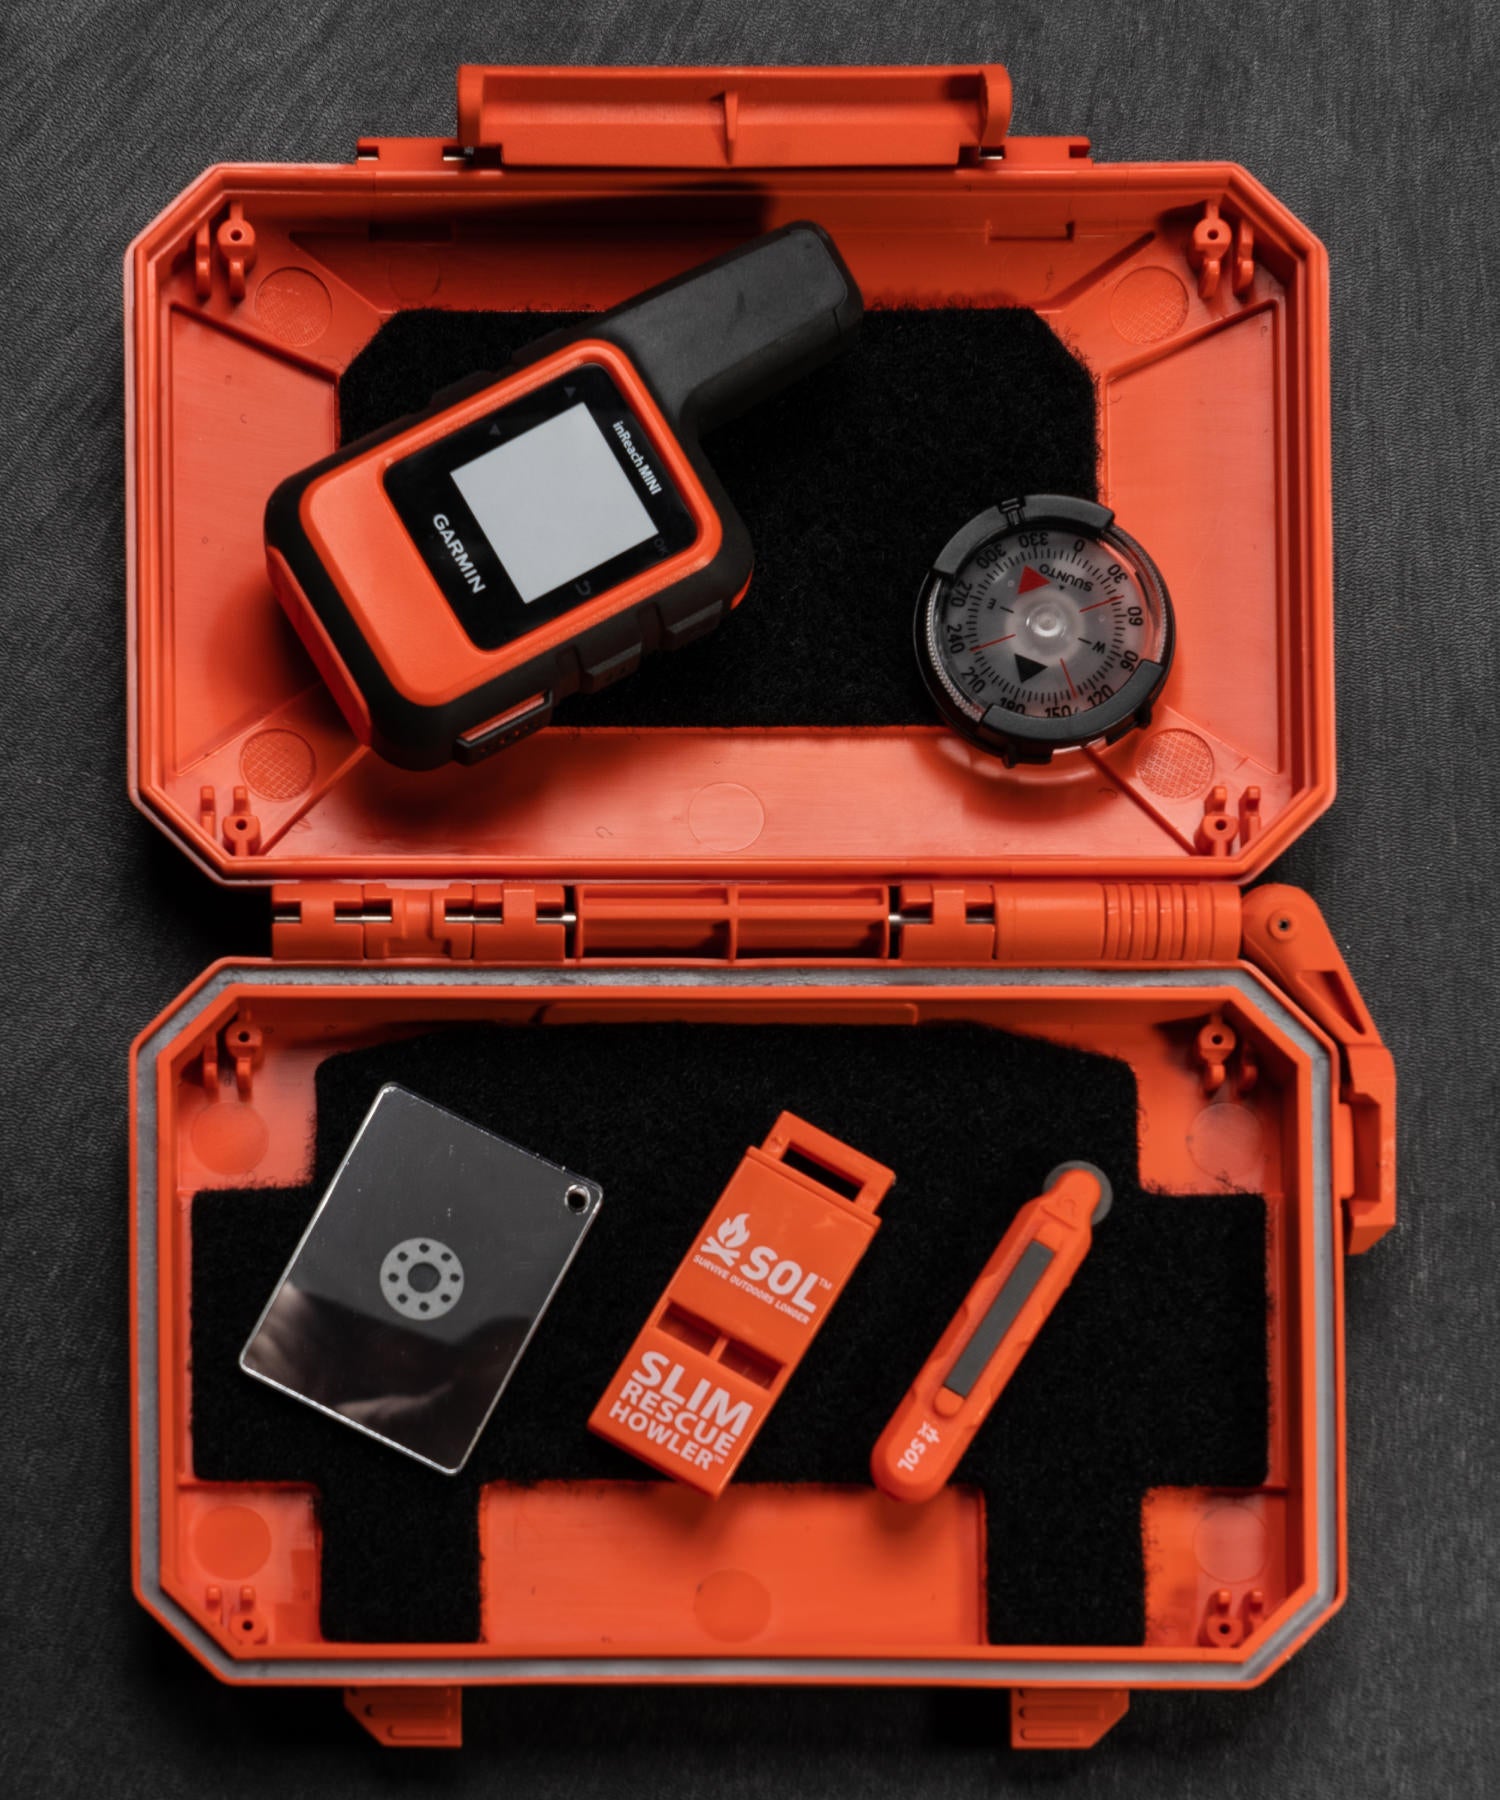 Thyrm DarkVault arancione usato come kit di emergenza con fischietto, acciarino, bussola e garmin in reach